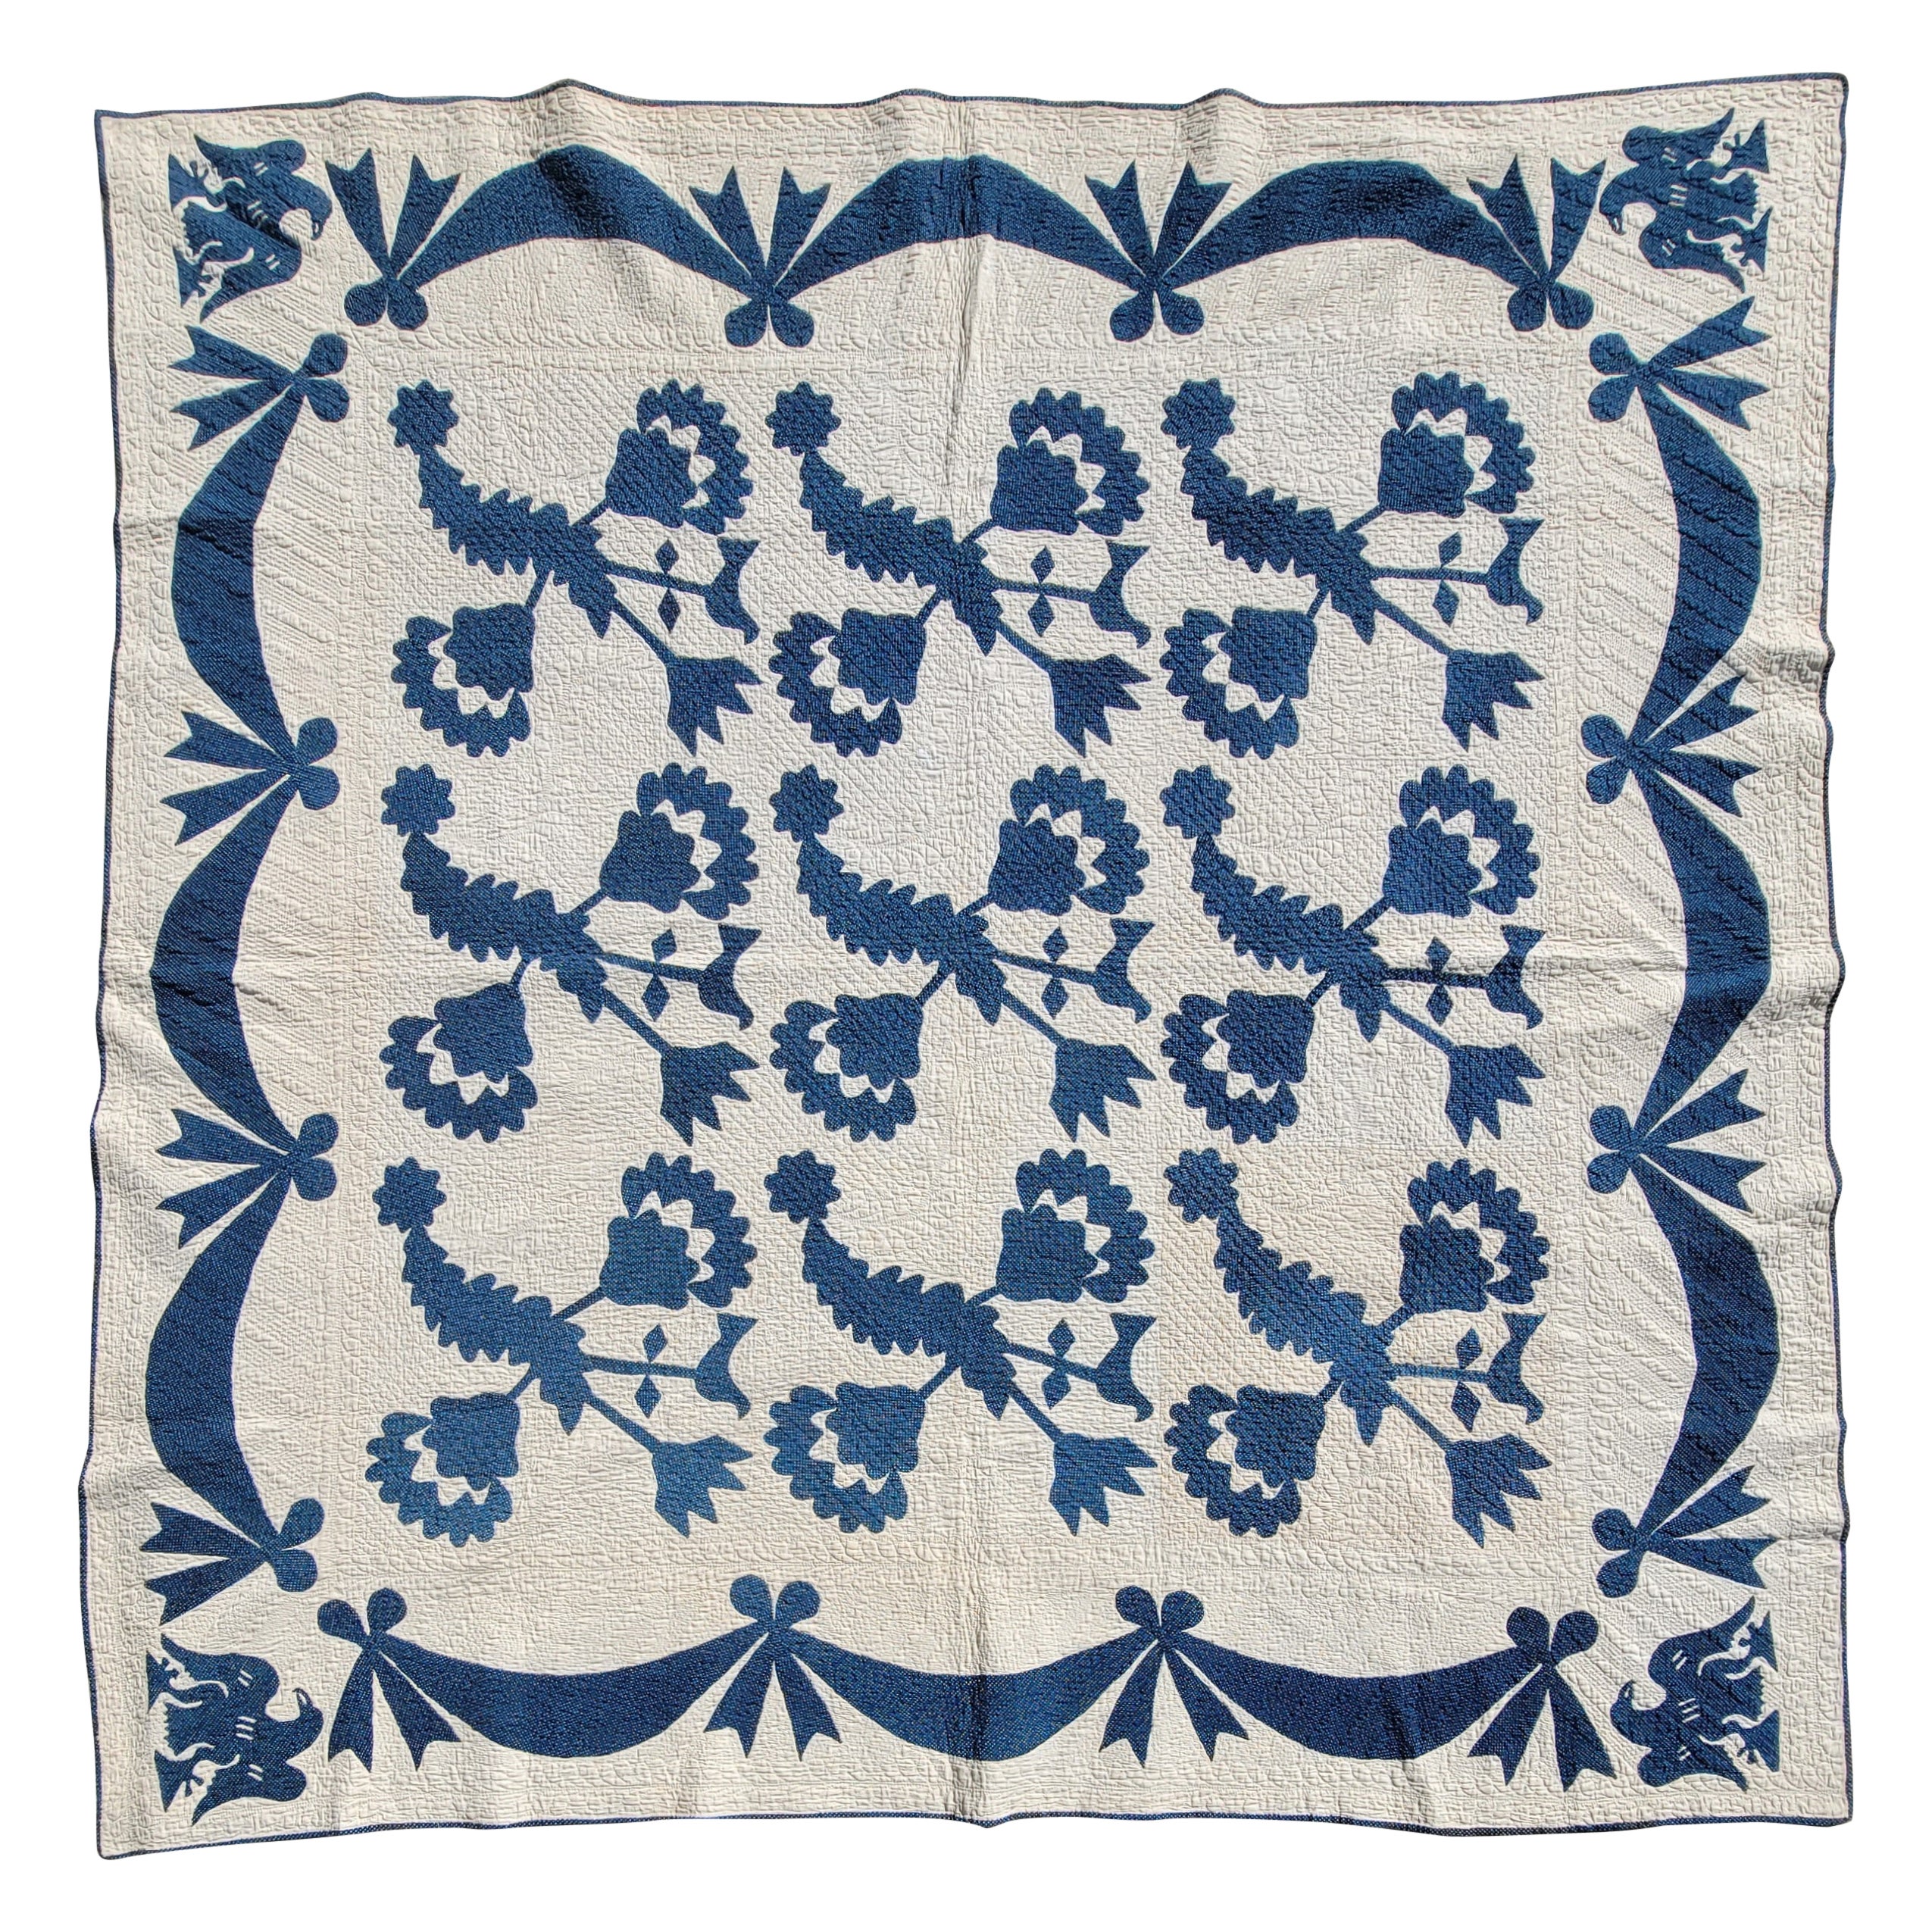 19th Century Blue & White Floral & Birds Applique Quilt